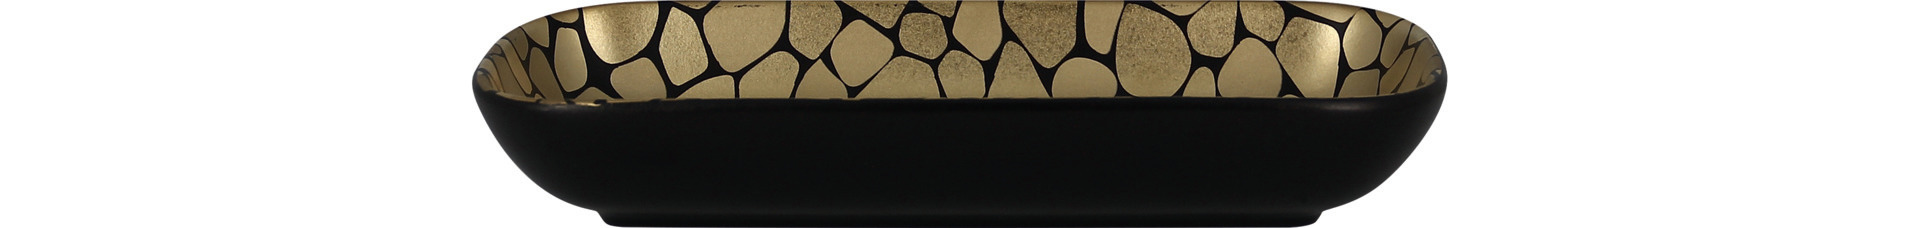 Schale rechteckig 220 x 110 x 35 mm / 0,33 l schwarz / gold